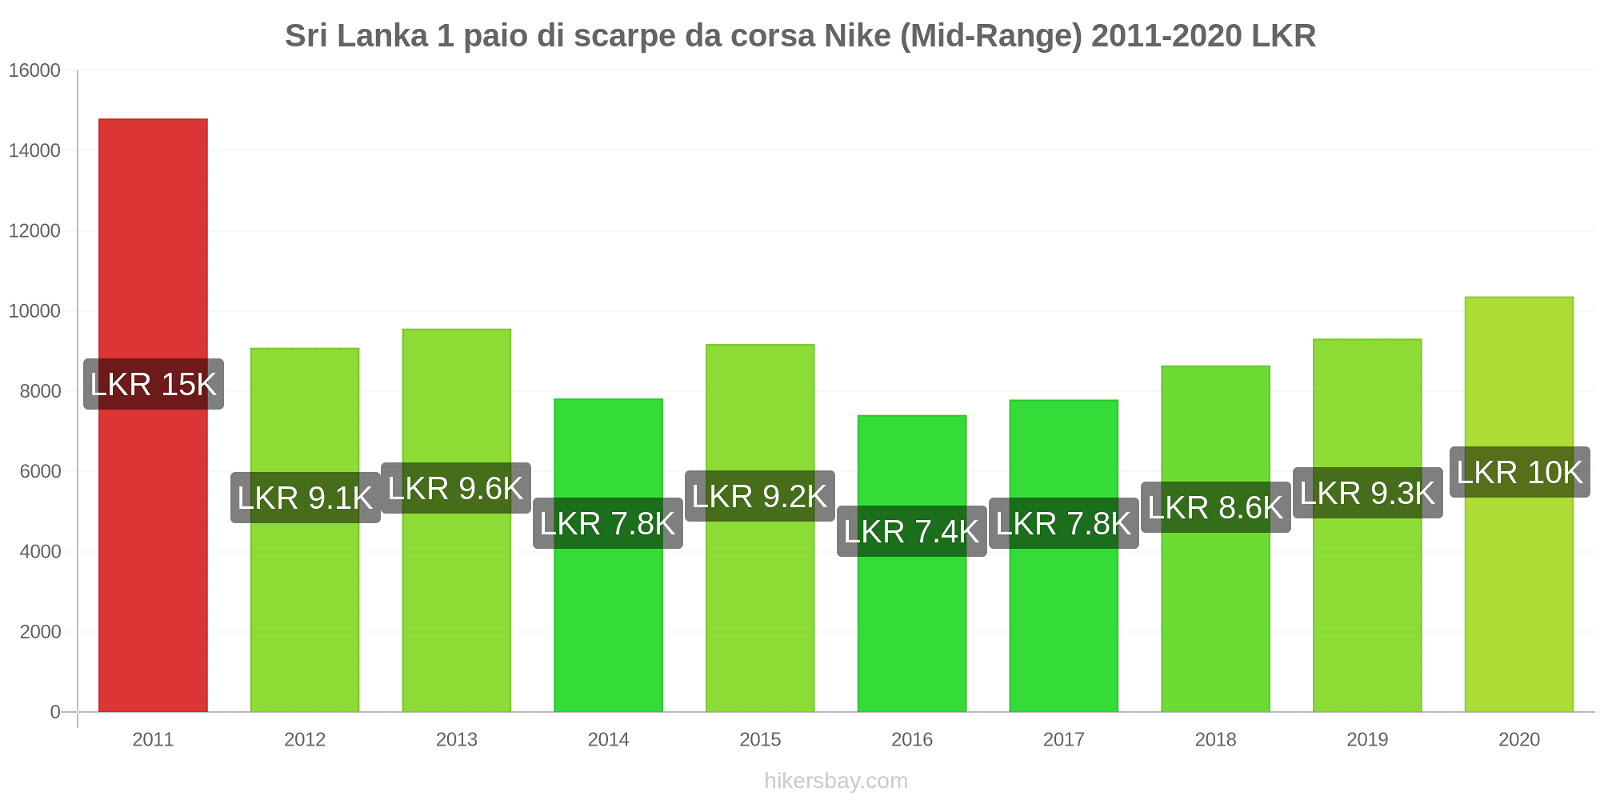 Sri Lanka variazioni di prezzo 1 paio di scarpe da corsa Nike (simile) hikersbay.com